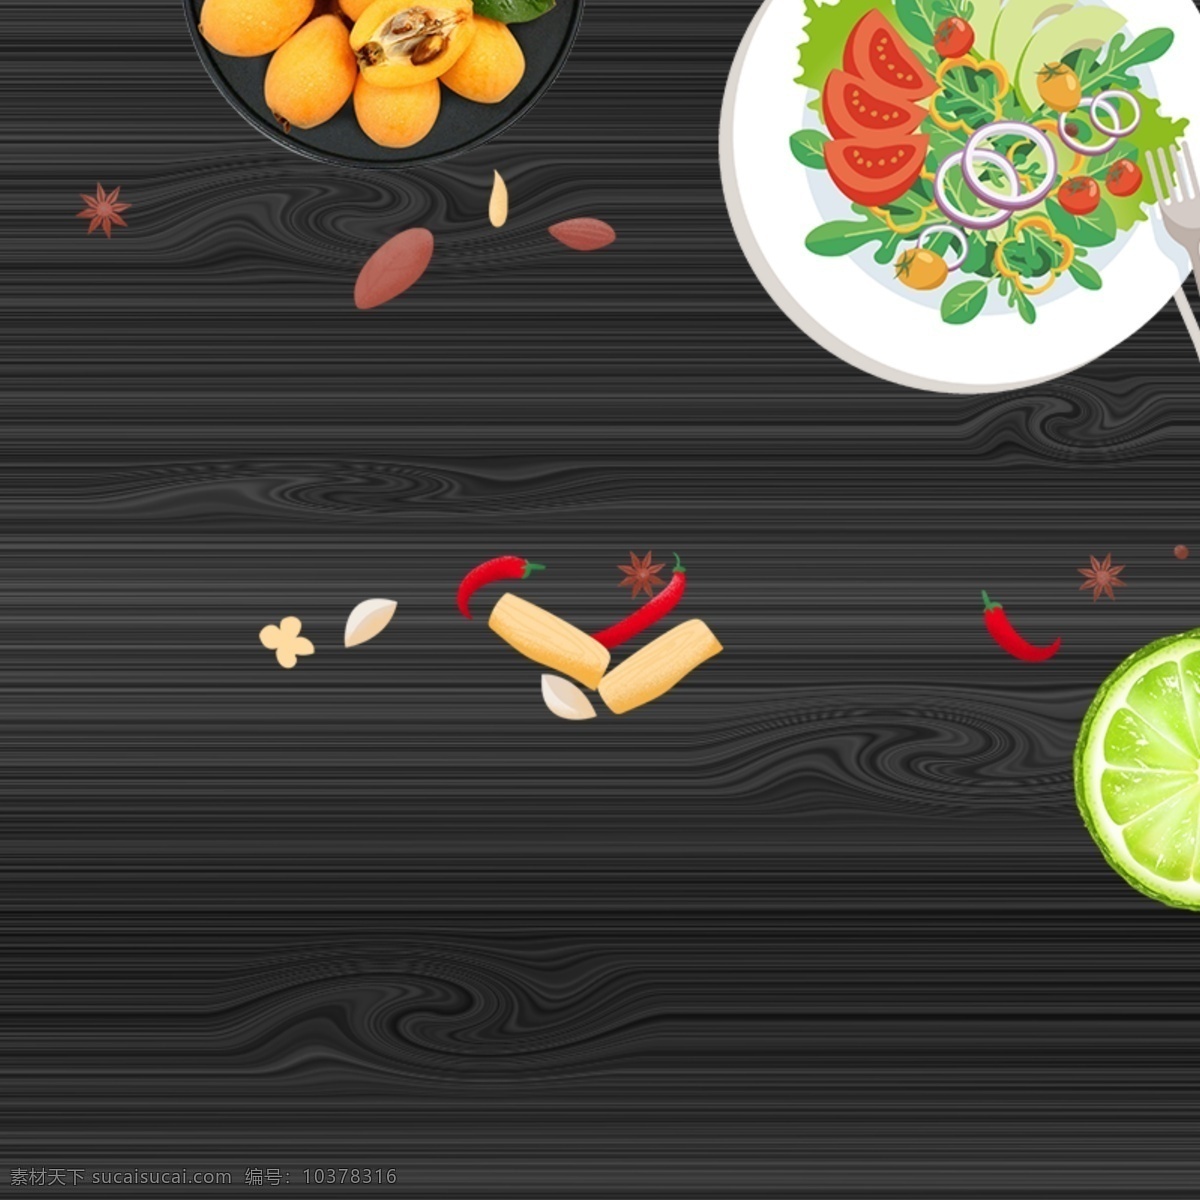 现代 厨房 蔬菜 菜单 封面 背景 背景图 菜单封面 简约 时尚 厨房海报背景 时尚背景 矢量素材